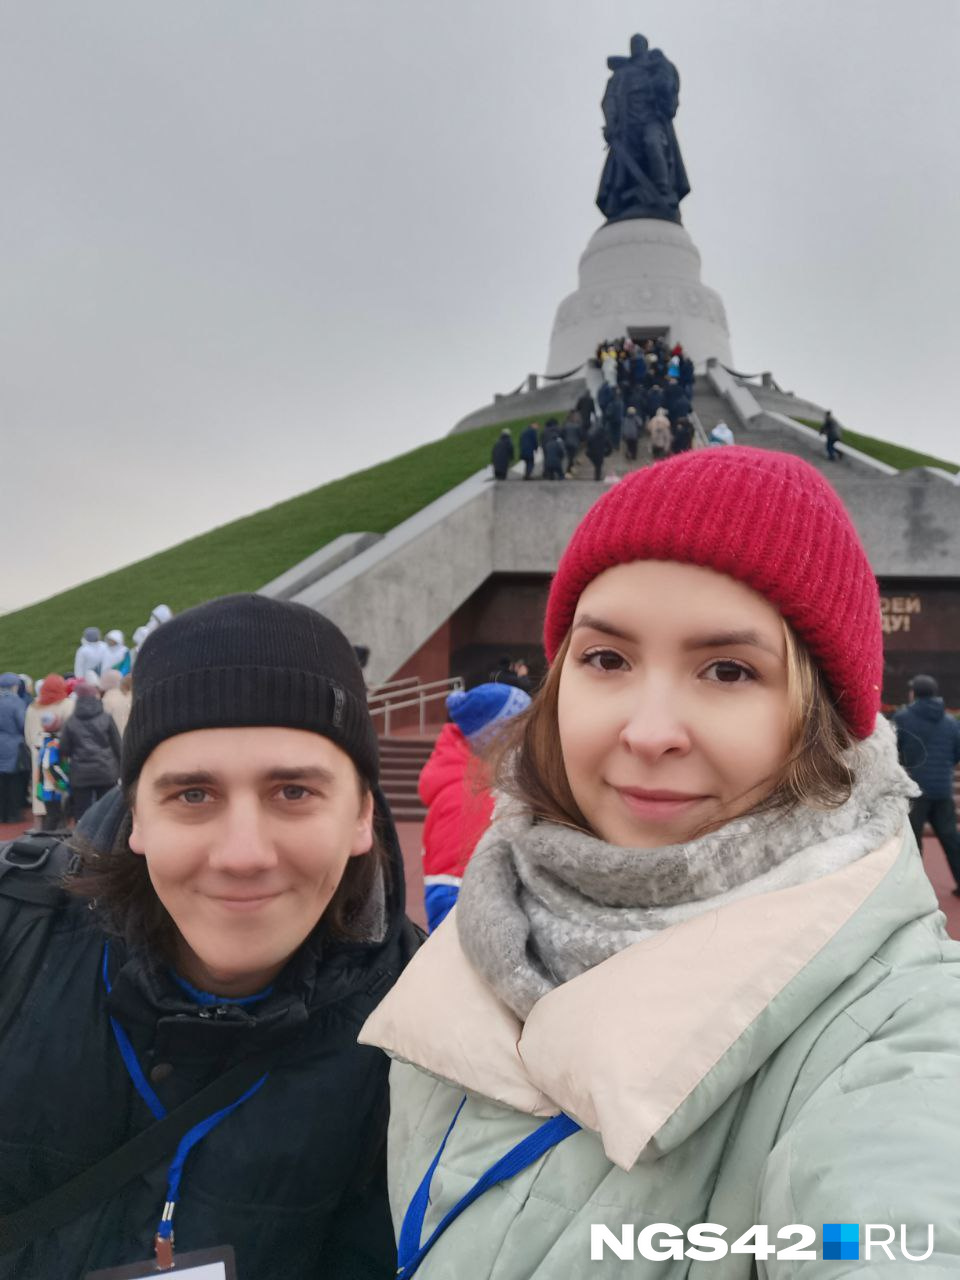 Эти два часа для вас на площади, несмотря на минусовую температуру, работали Анастасия Ильина и Максим Серков